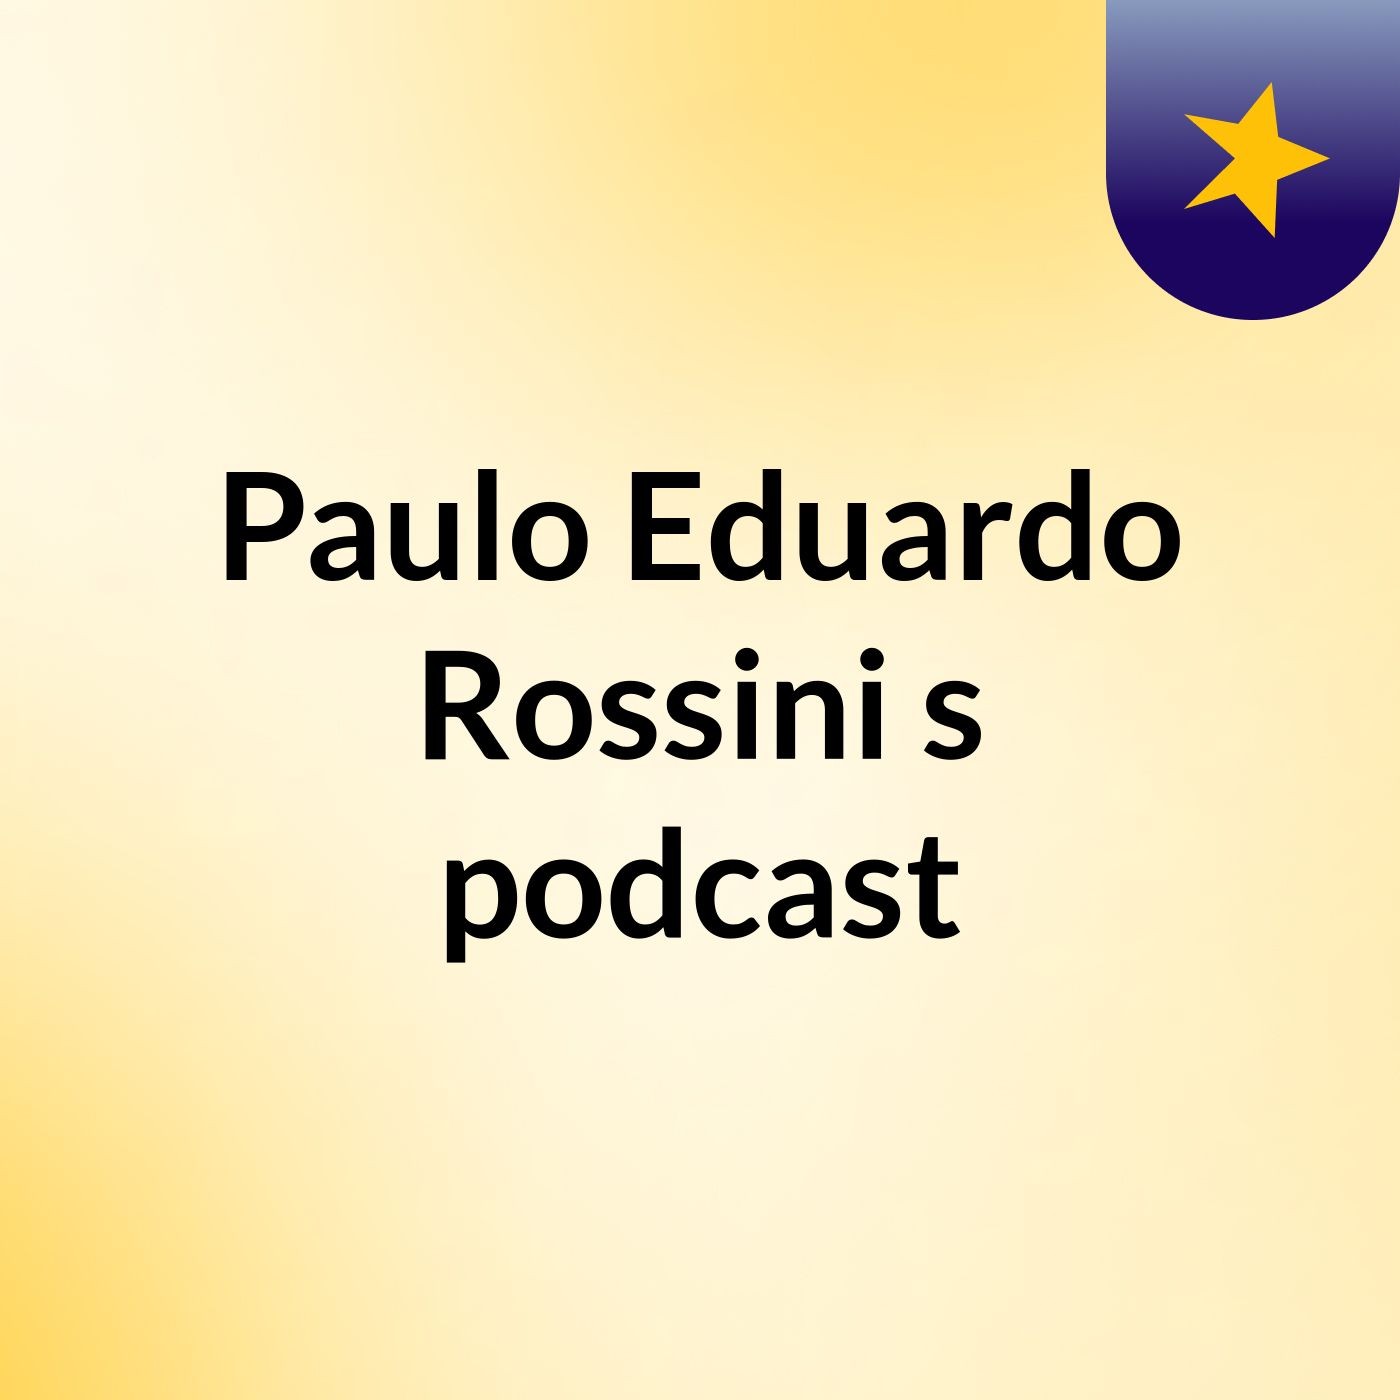 Paulo Eduardo Rossini's podcast